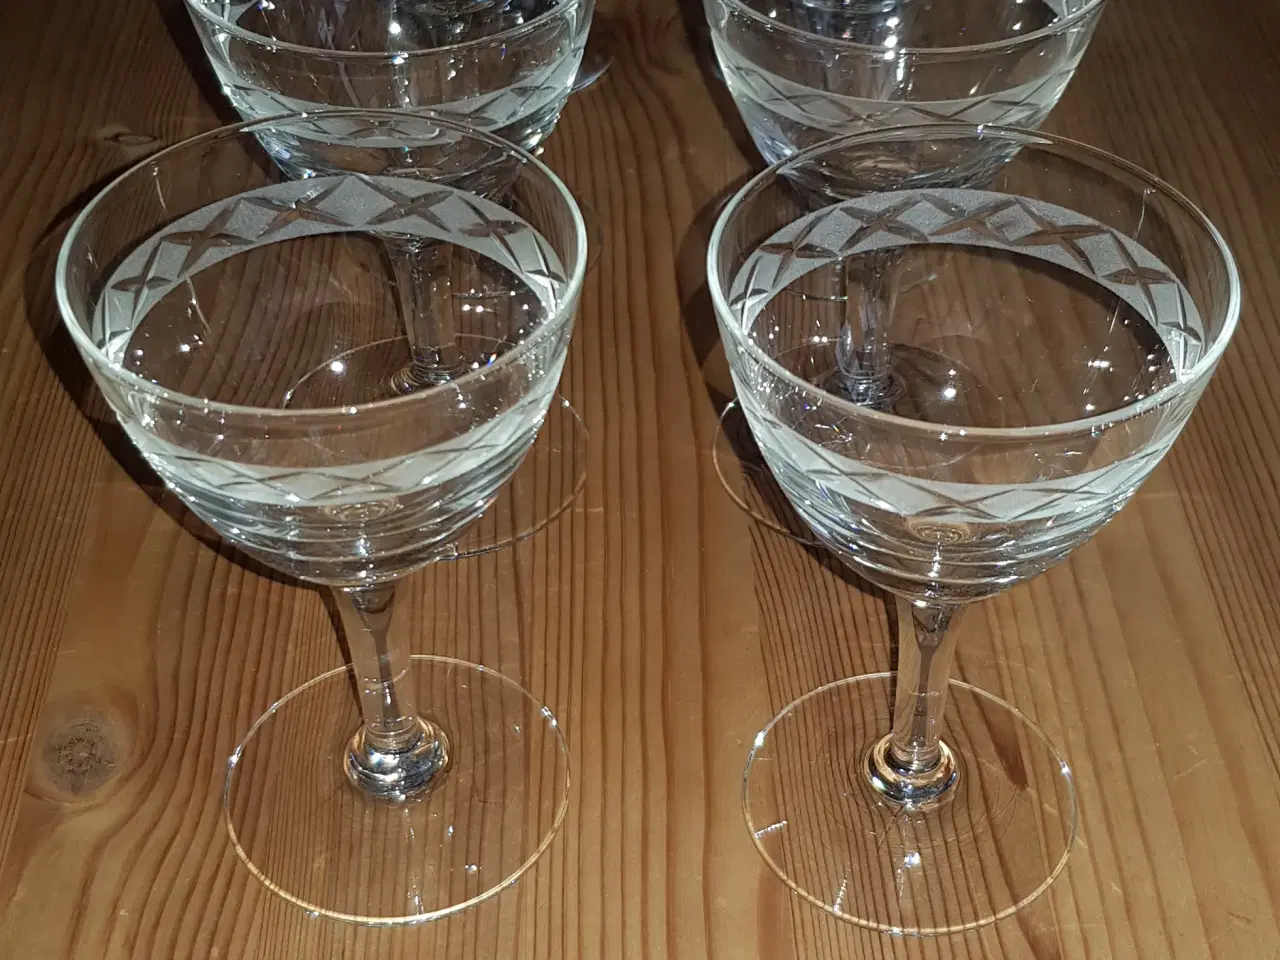 Billede 1 - Ejby klare hvidvinsglas fra Holmegård